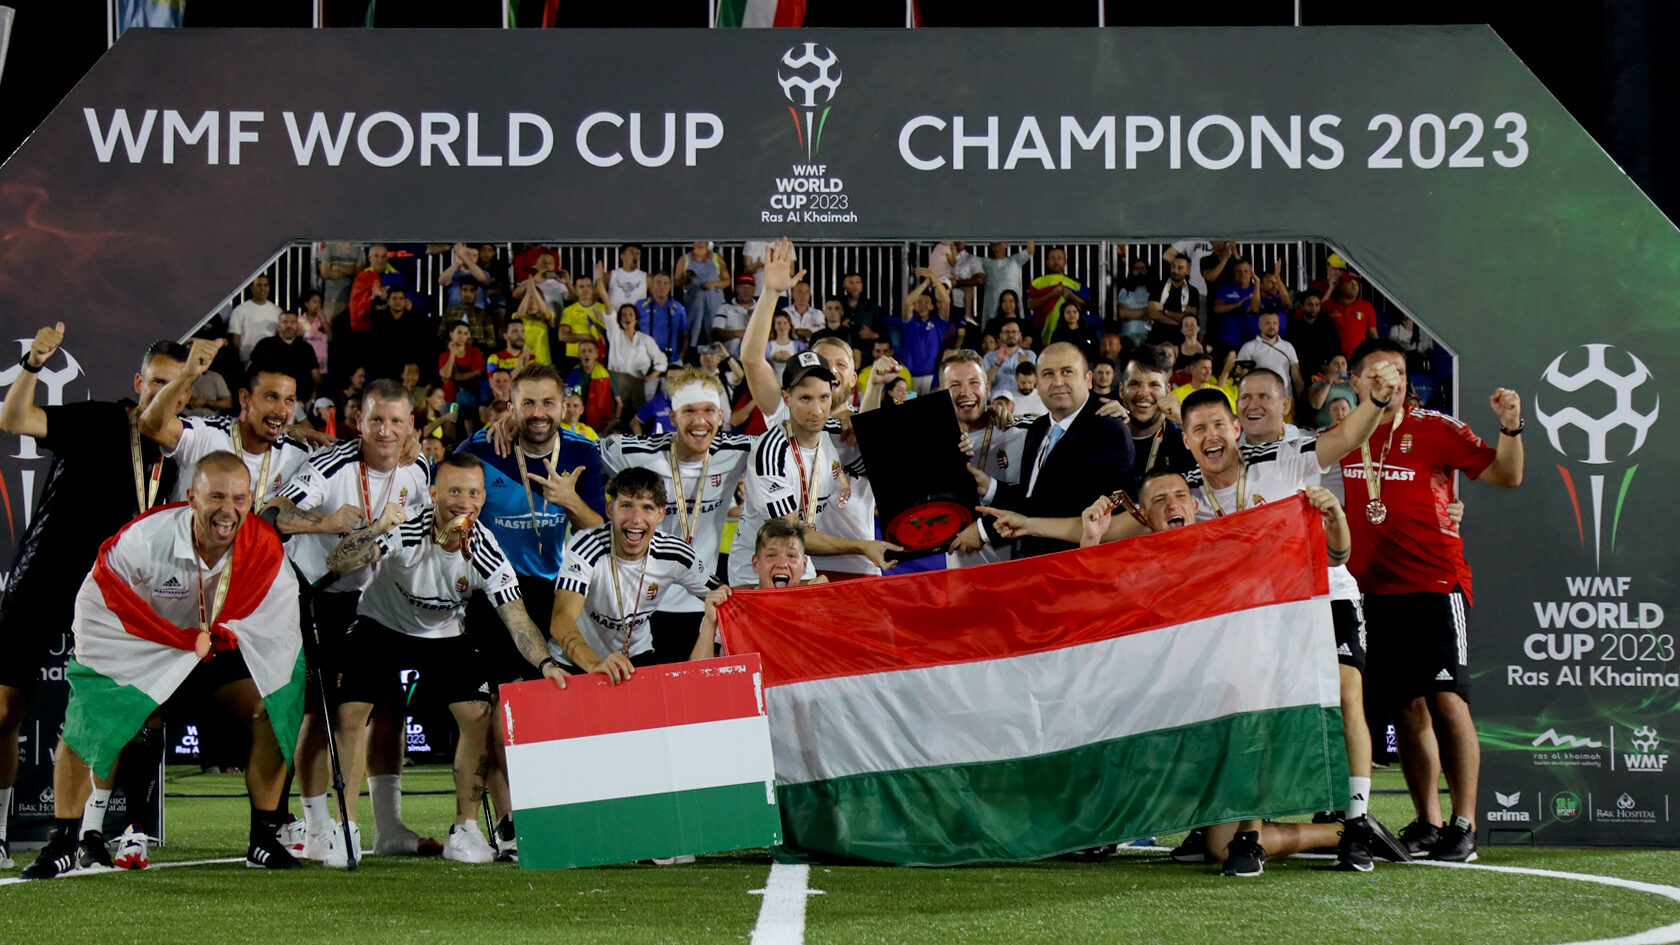 La selección húngara volverá a enfrentarse a los campeones del mundo en la Eurocopa